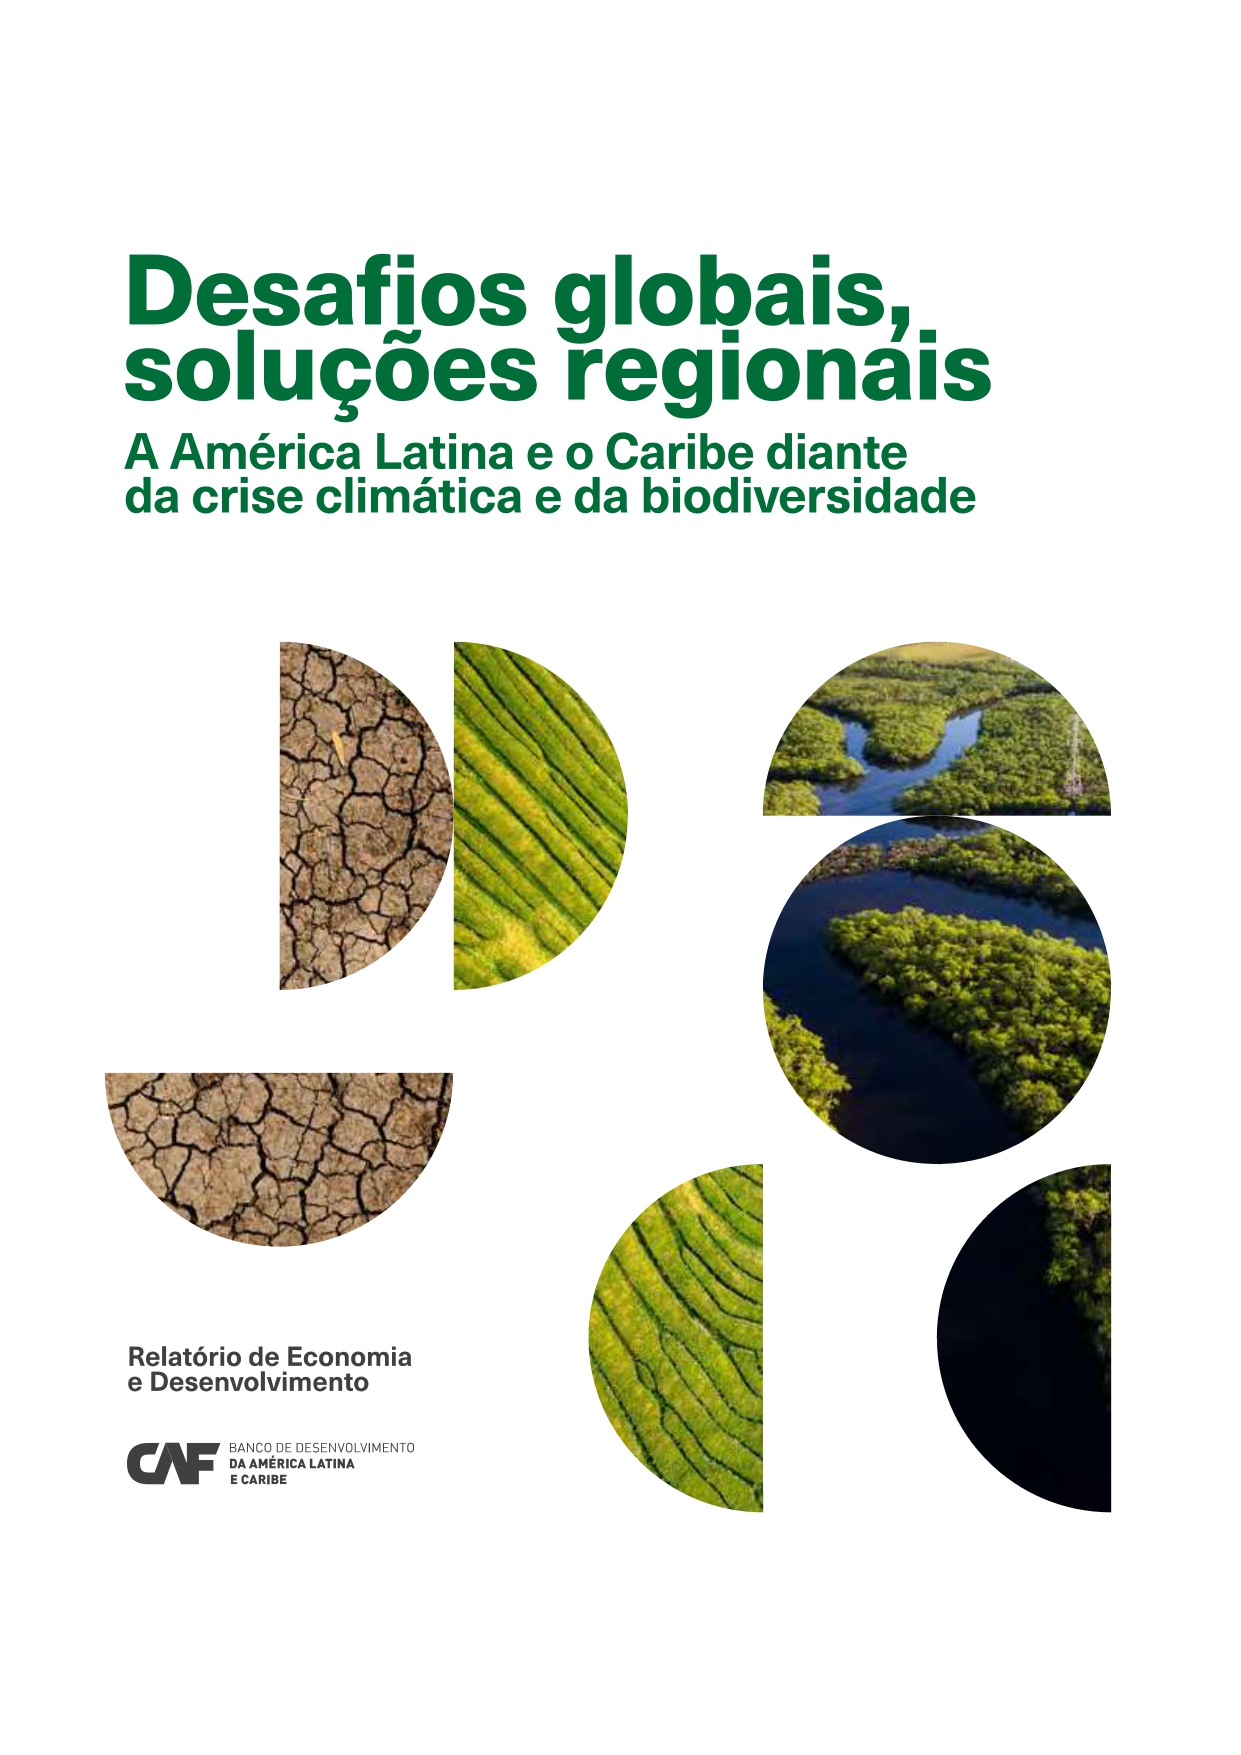 Desafios globais, soluções regionais A América Latina e o Caribe diante da crise climática e da biodiversidade